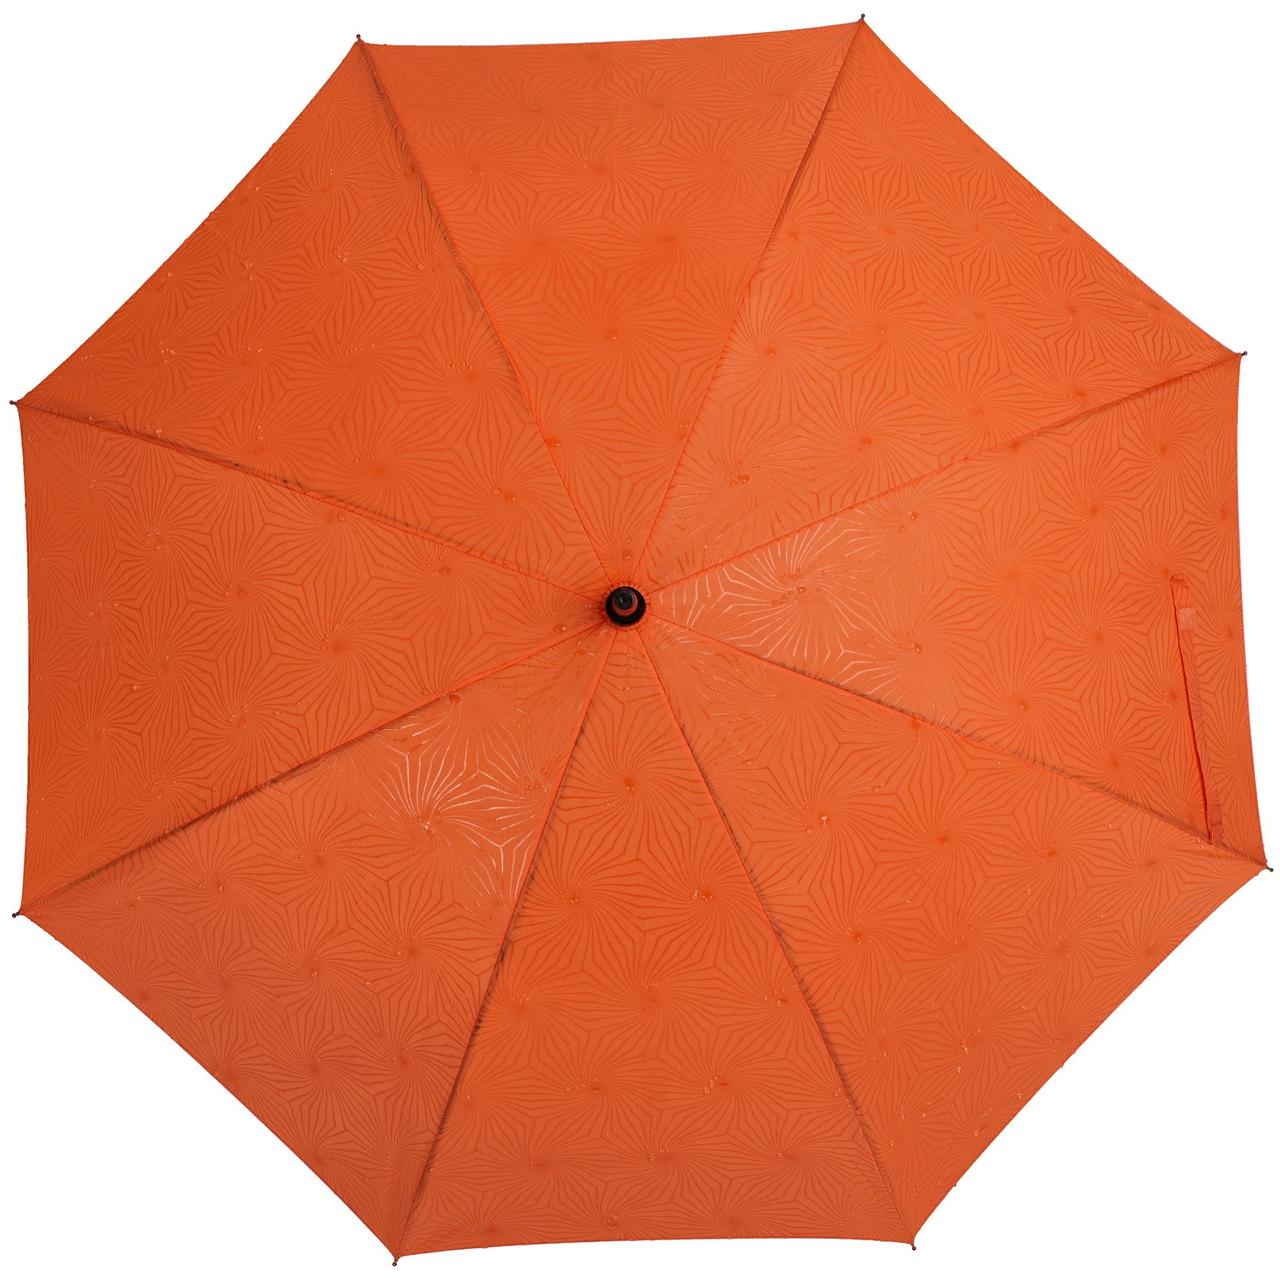 Зонт-трость Magic с проявляющимся цветочным рисунком, оранжевый (артикул 17012.20), фото 1